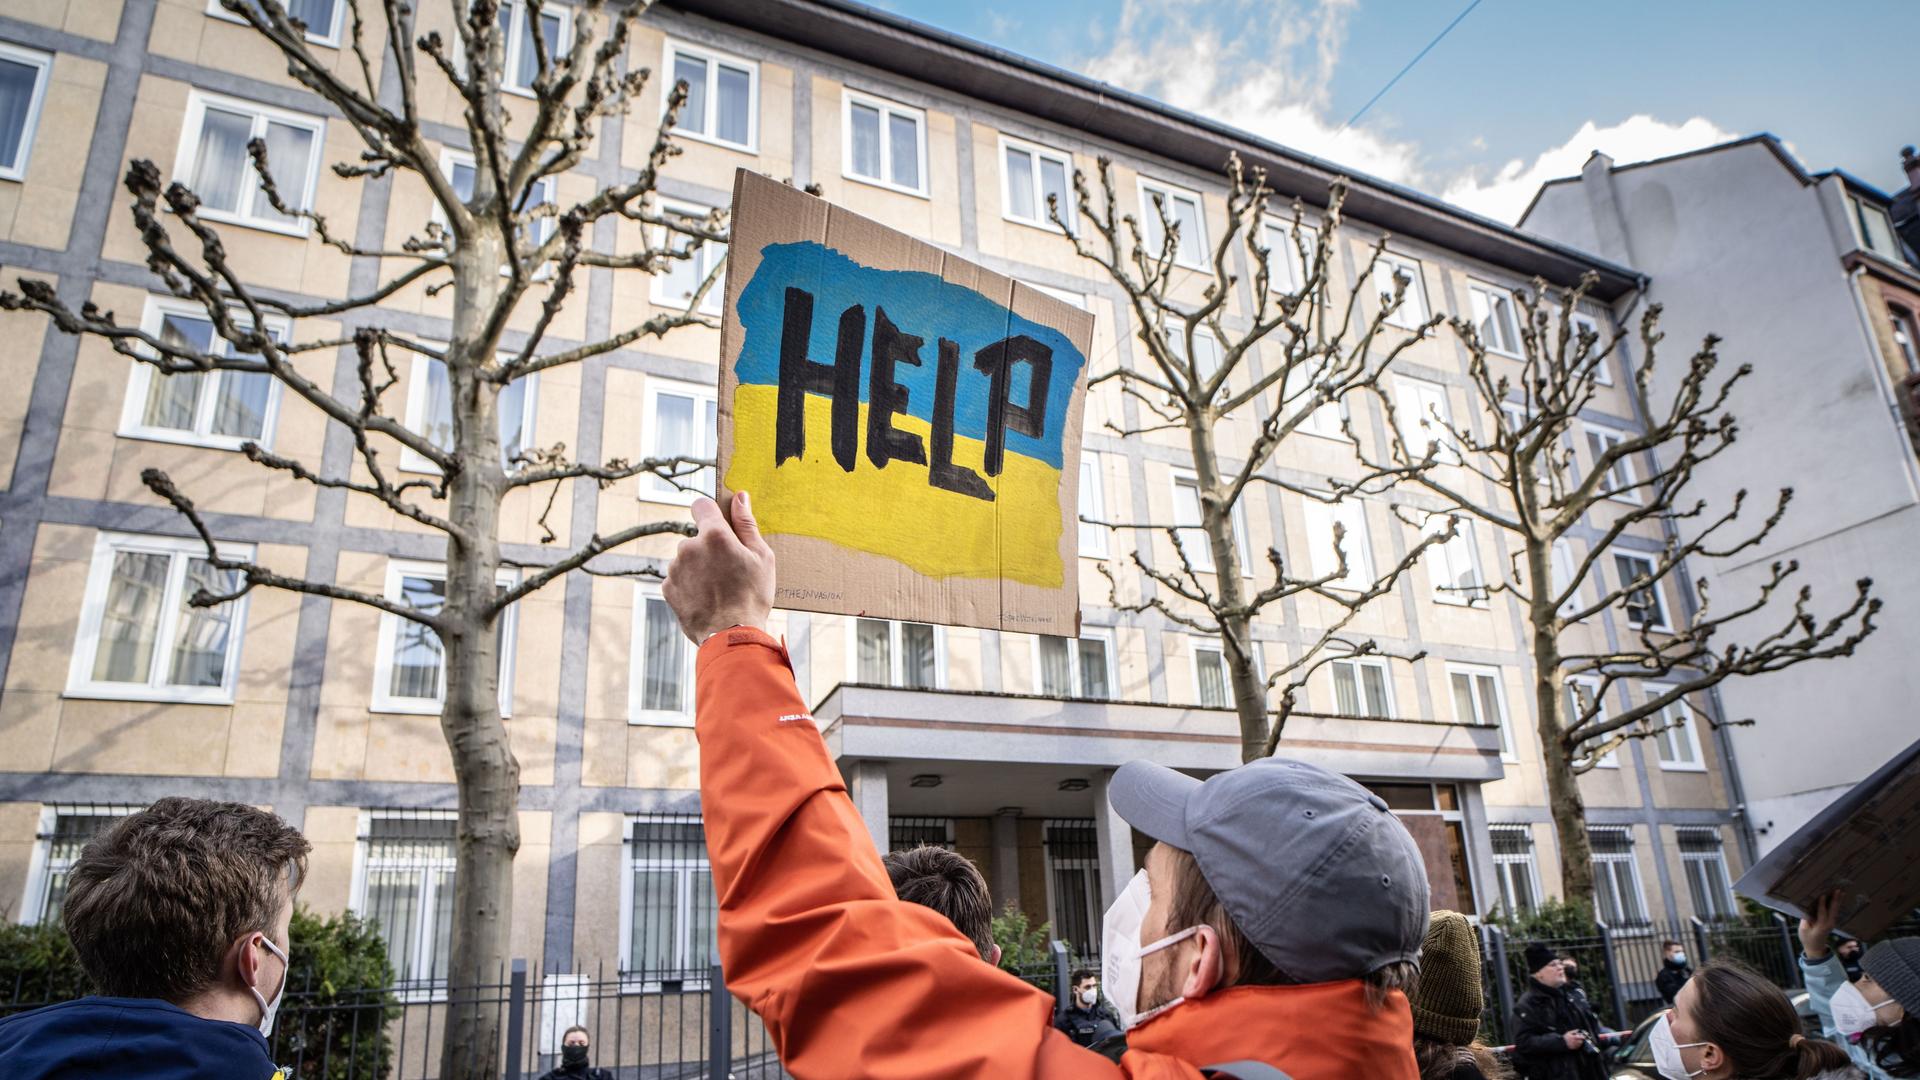 Frankfurt am Main: Menschen demonstrieren vor dem Konsulat Russlands gegen den Krieg in der Ukraine. Einer der Demonstranten hält ein Plakat mit der Aufschrift "Help".